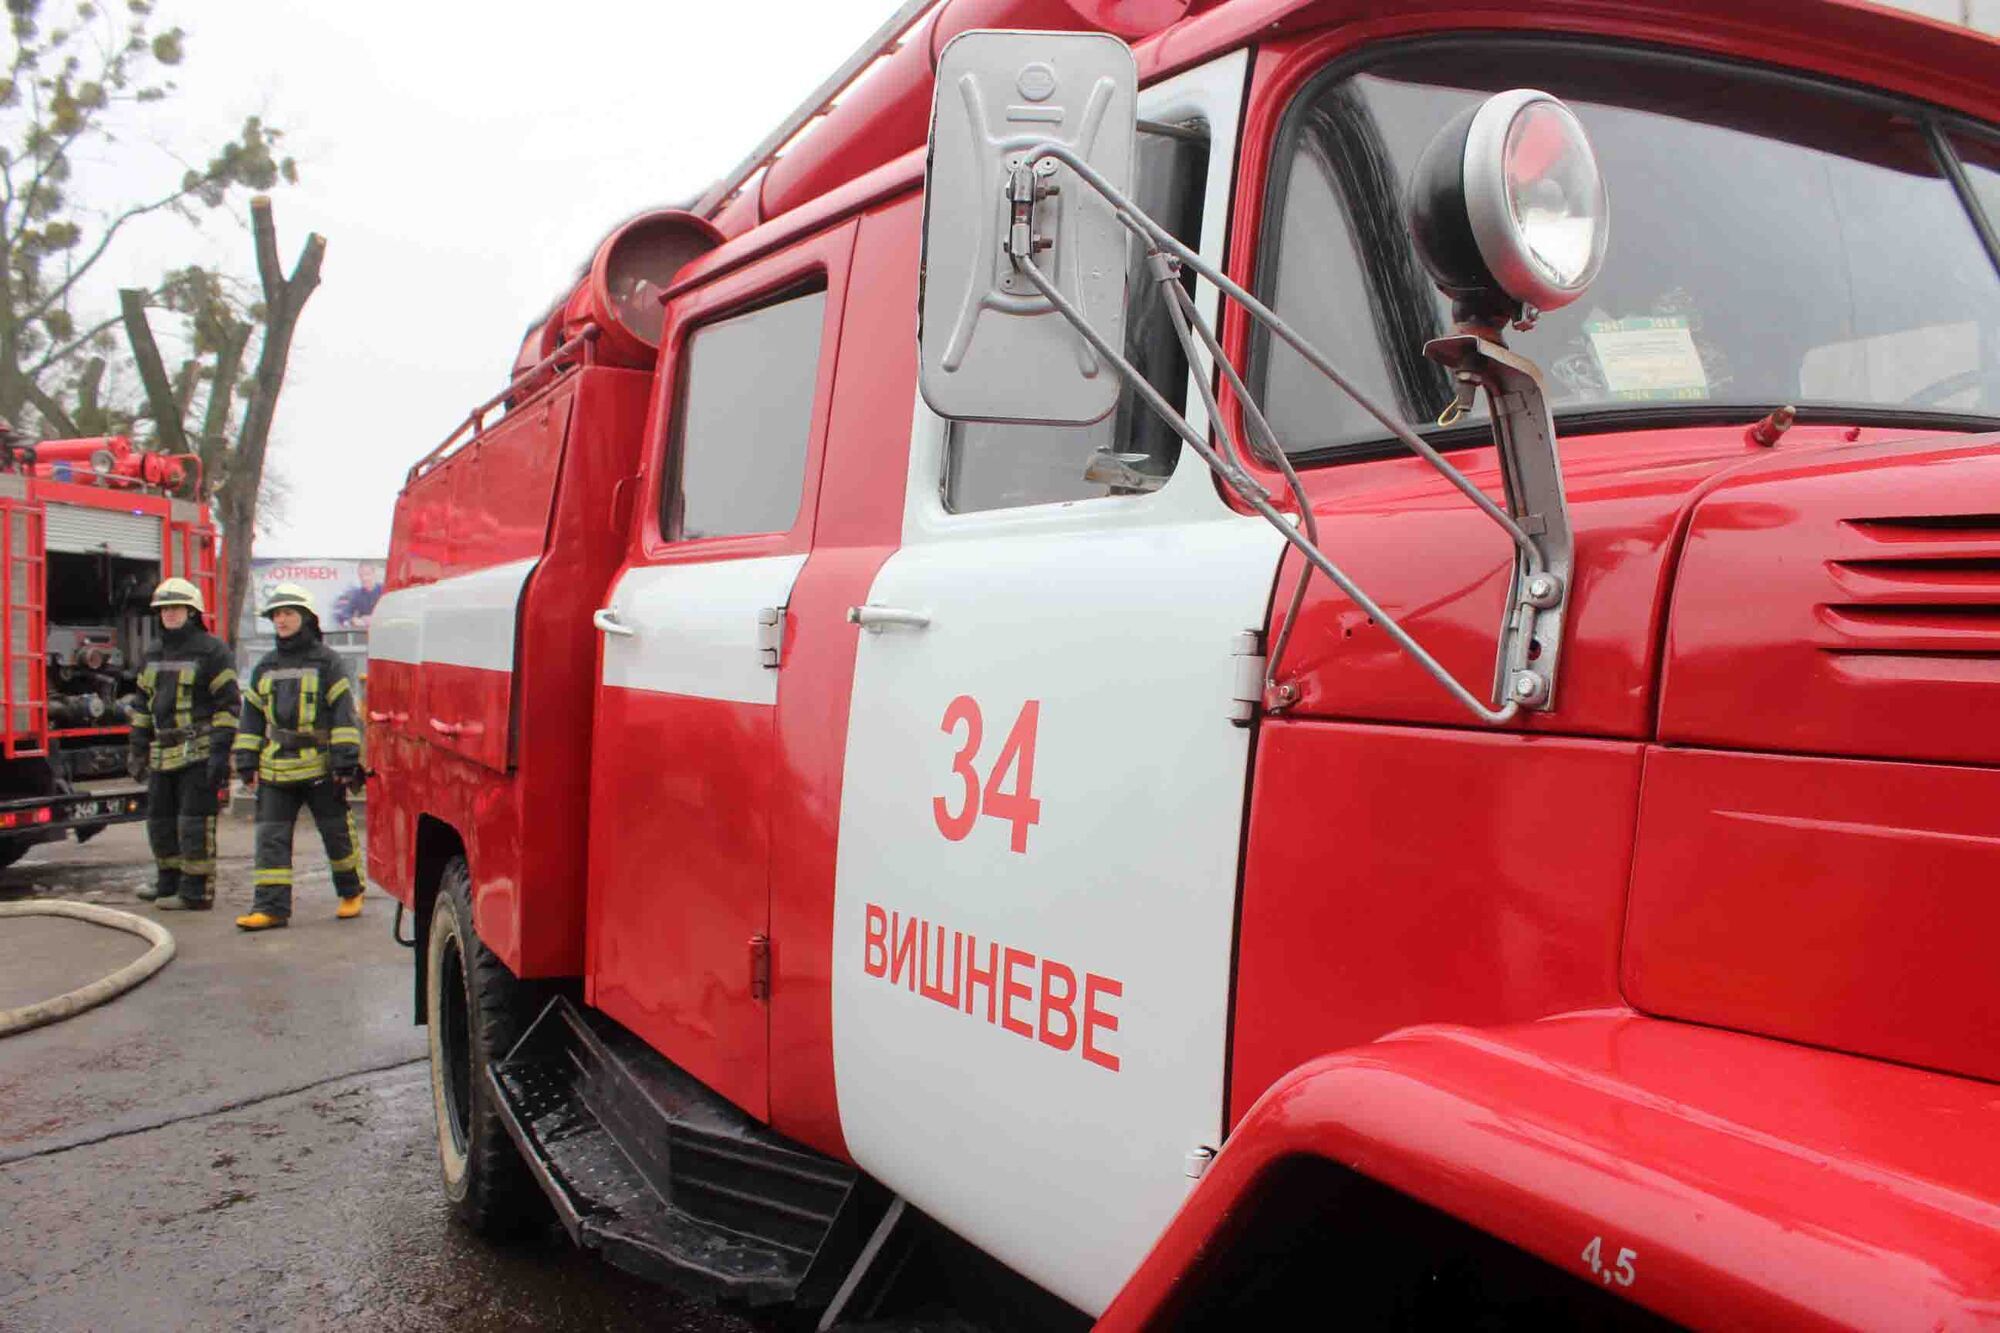 Київська область: рятувальники ліквідували загорання металевого ангару